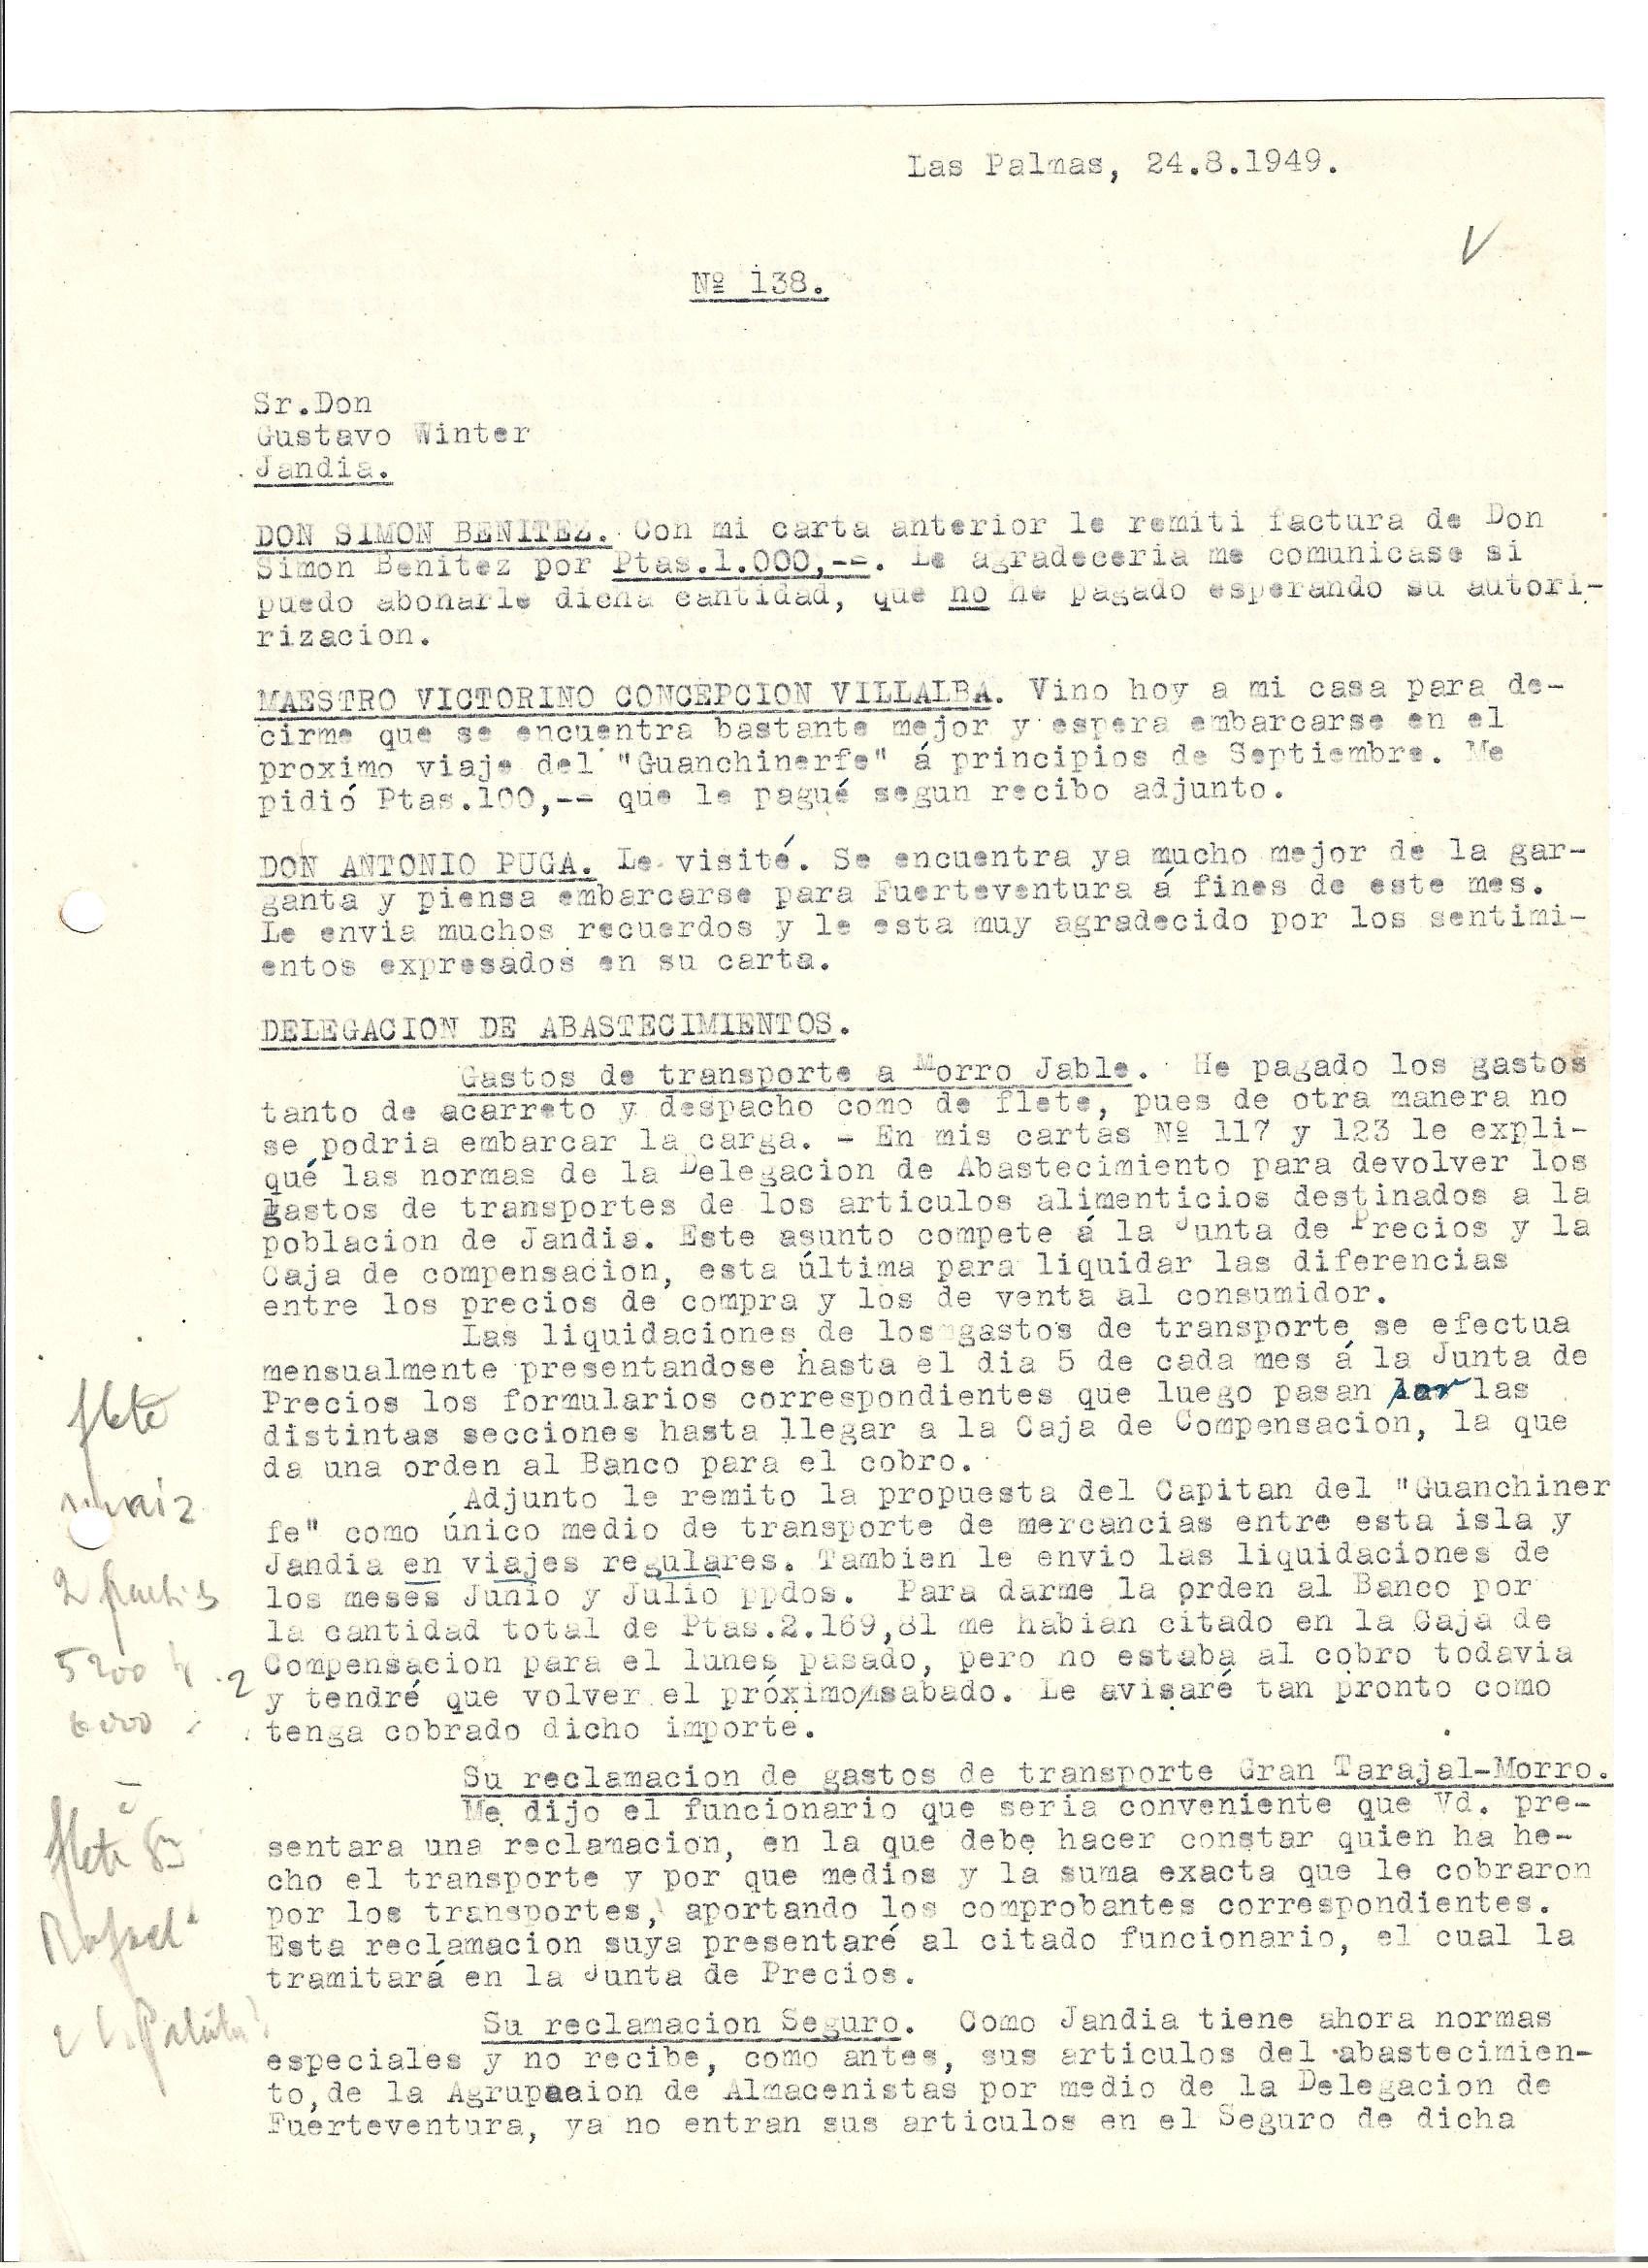 Carta nº138 en la que se hace referencia al Maestro D. Victorino Concepción Villalba en agosto de 1949 